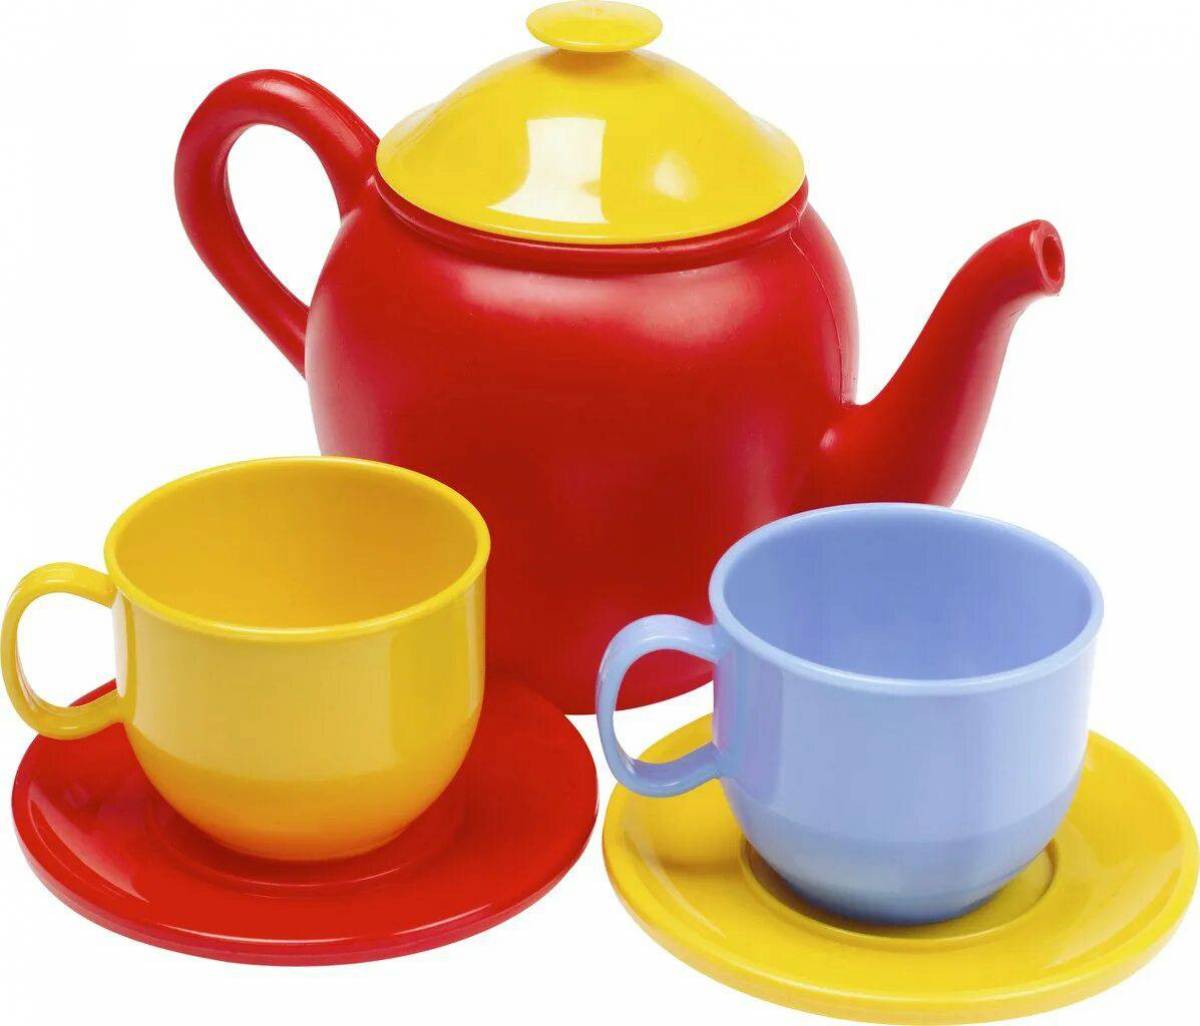 Чайник и чашка для детей #22